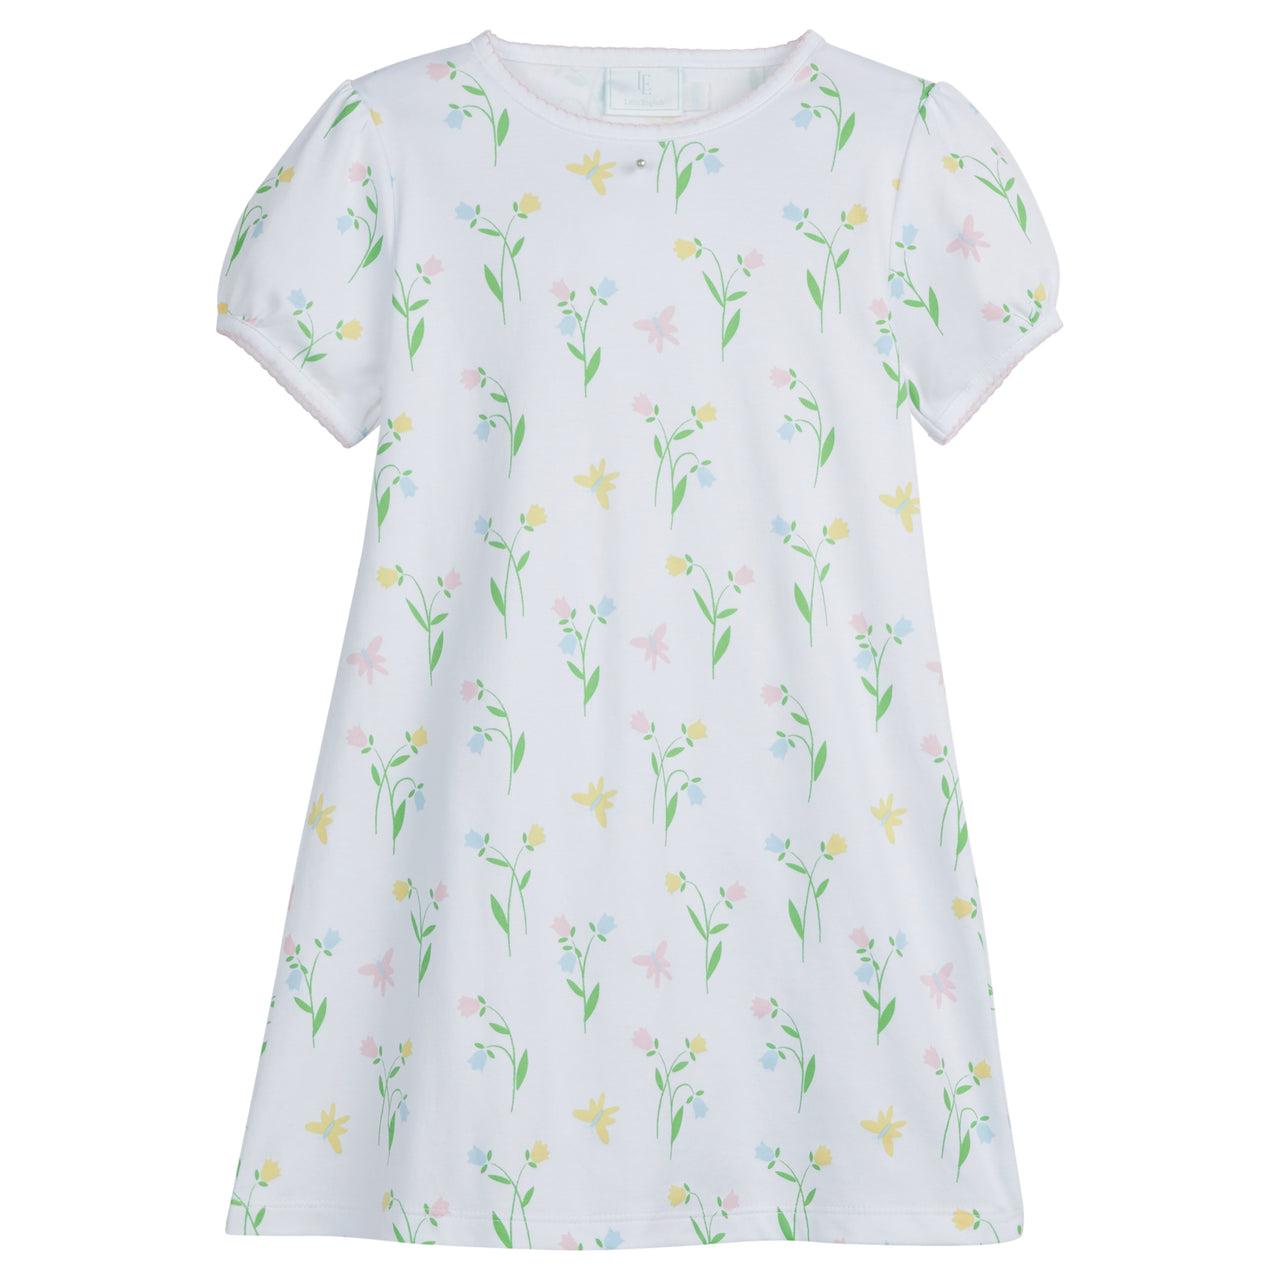 Little English Printed T-Shirt Dress Butterfly Garden S7GD07 5101